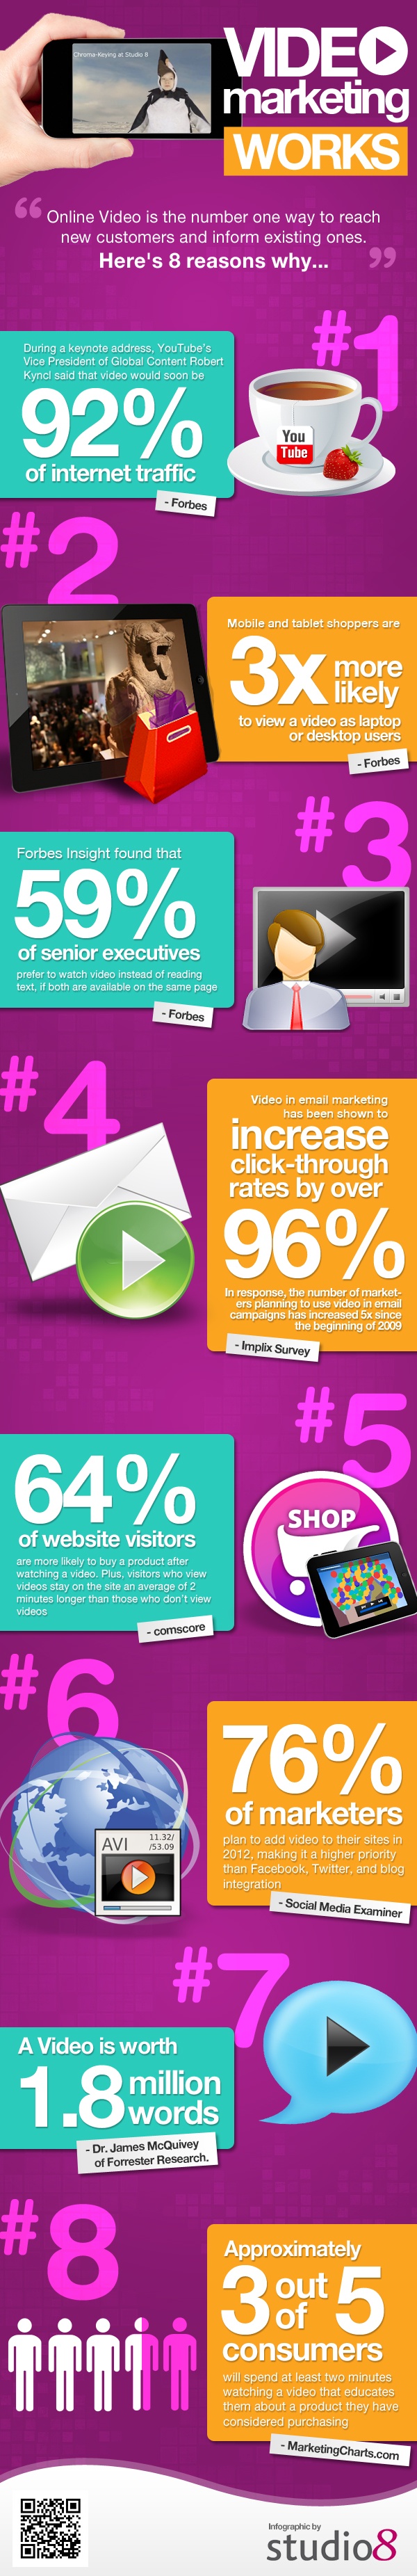 Nostromo agence de communication vous presente une infographie sur l'utilite de la video sur le web pour votre marketing